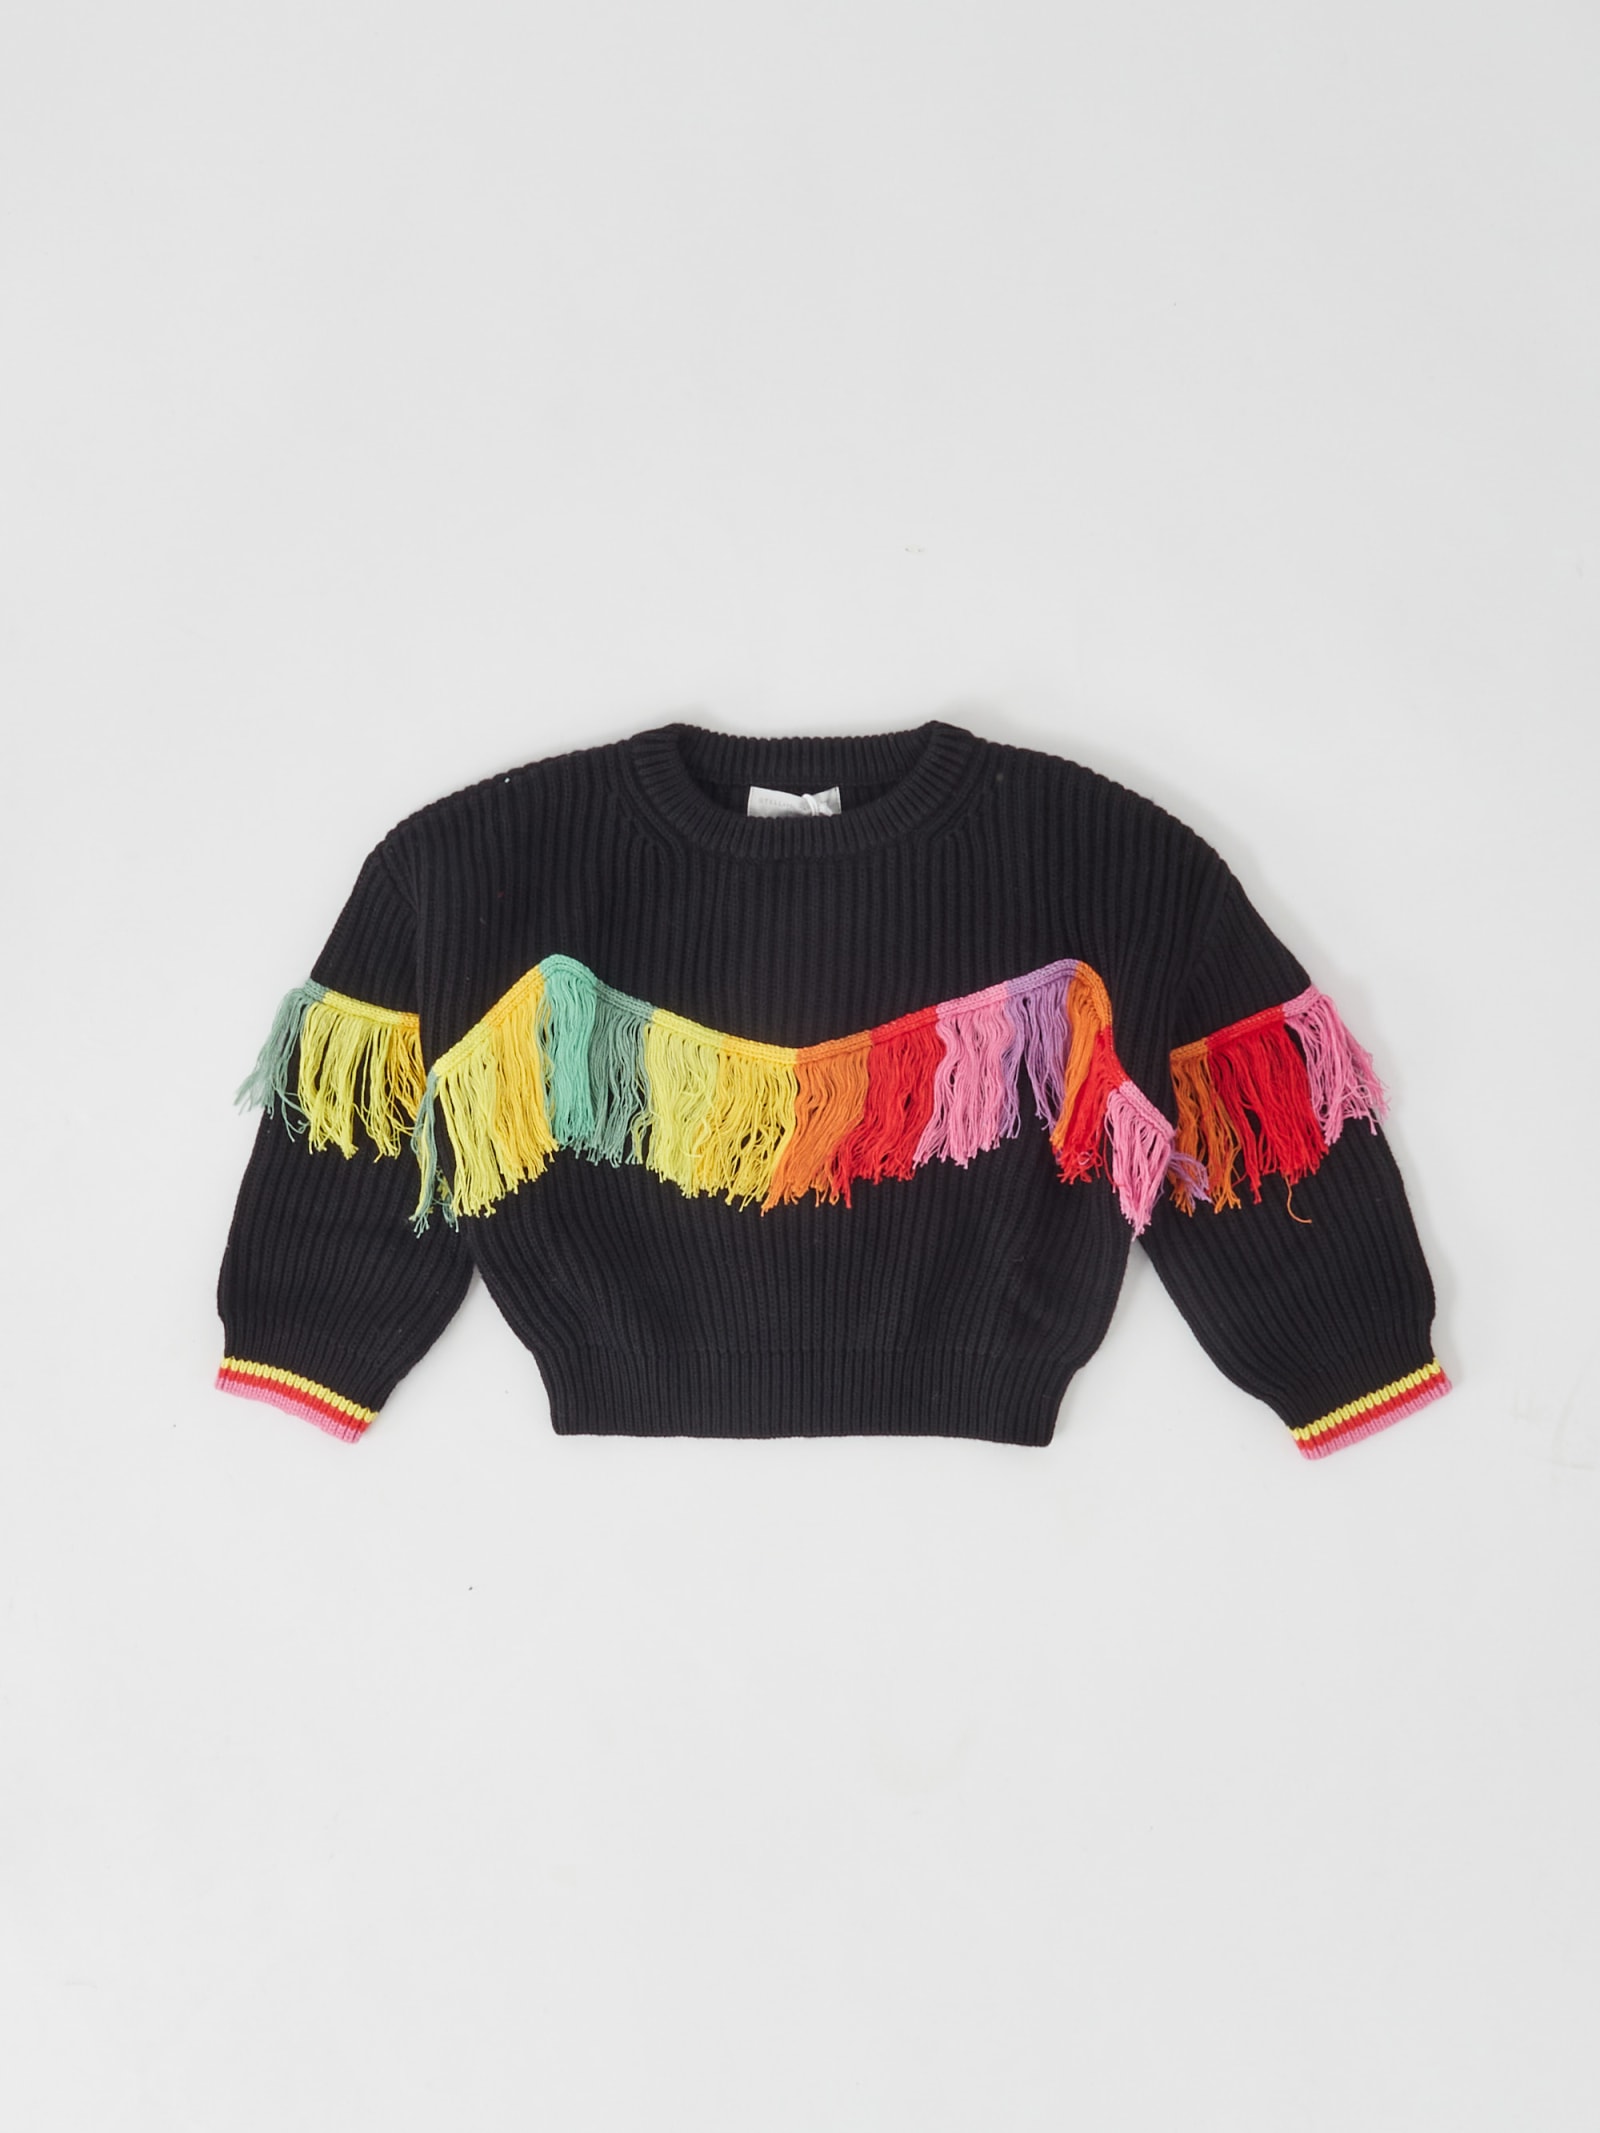 Stella McCartney Knit Top-wear